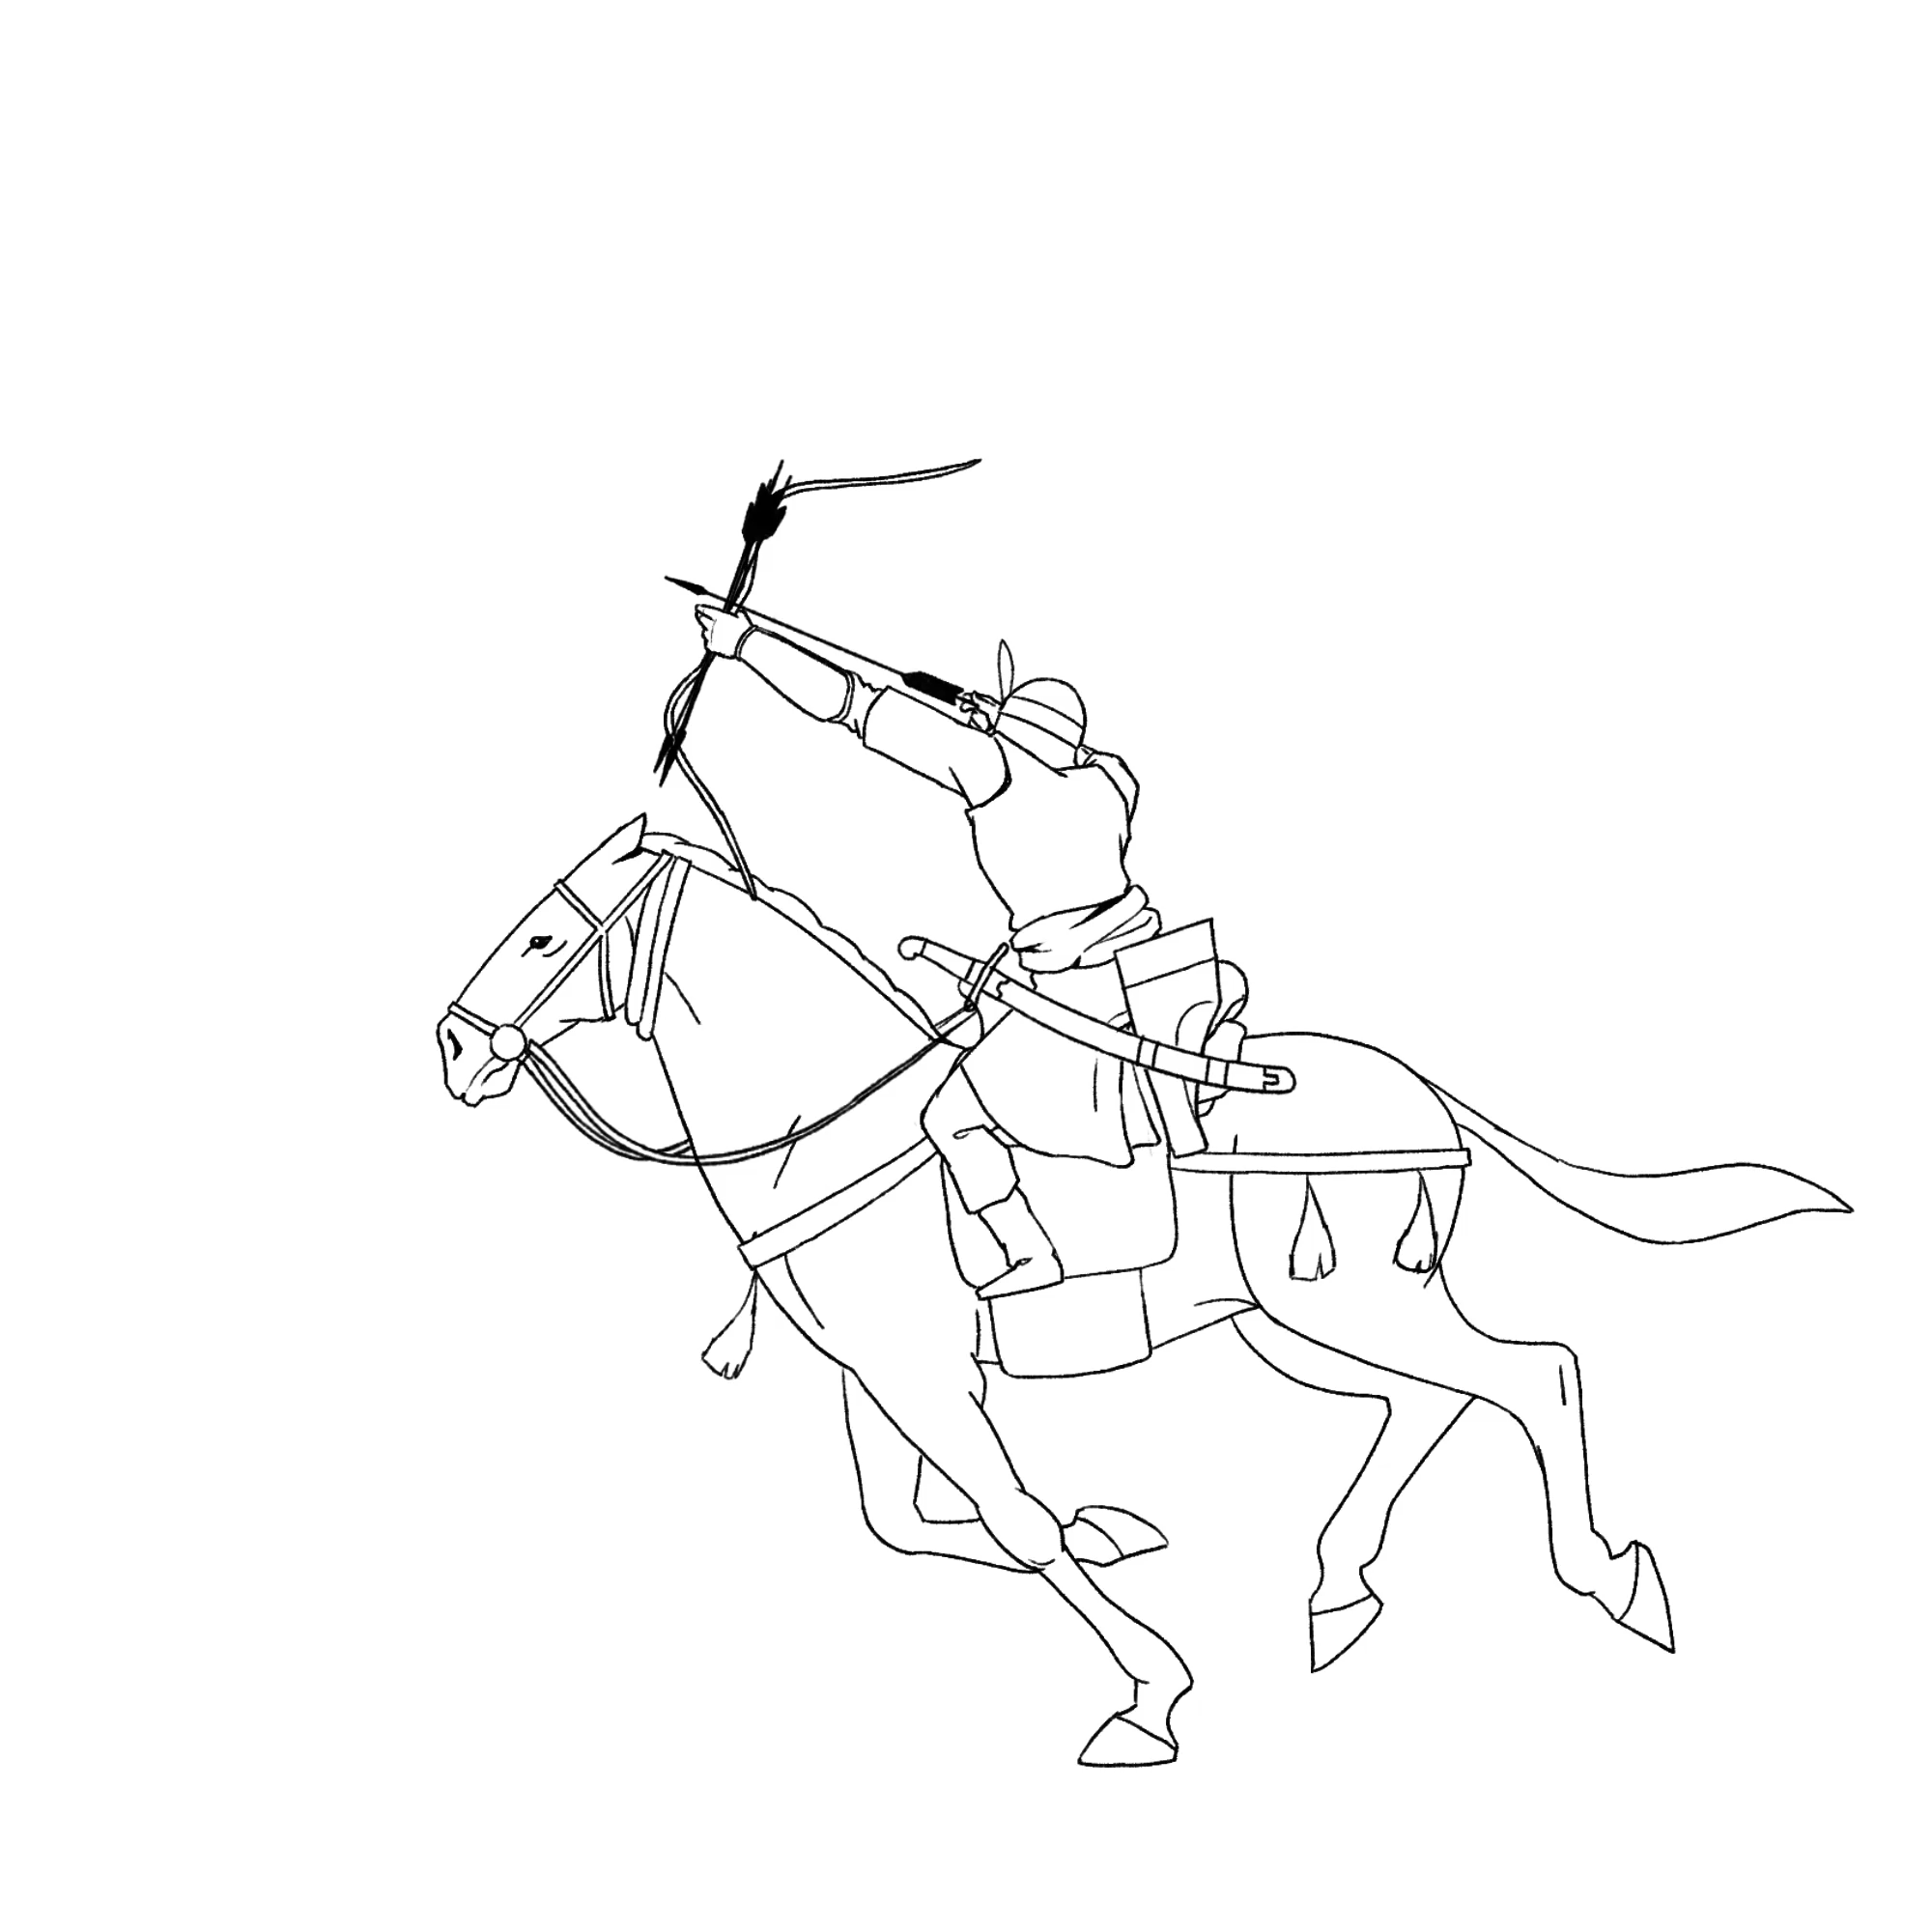 1_Mughal Cavalry_3_turcoman_1.gif